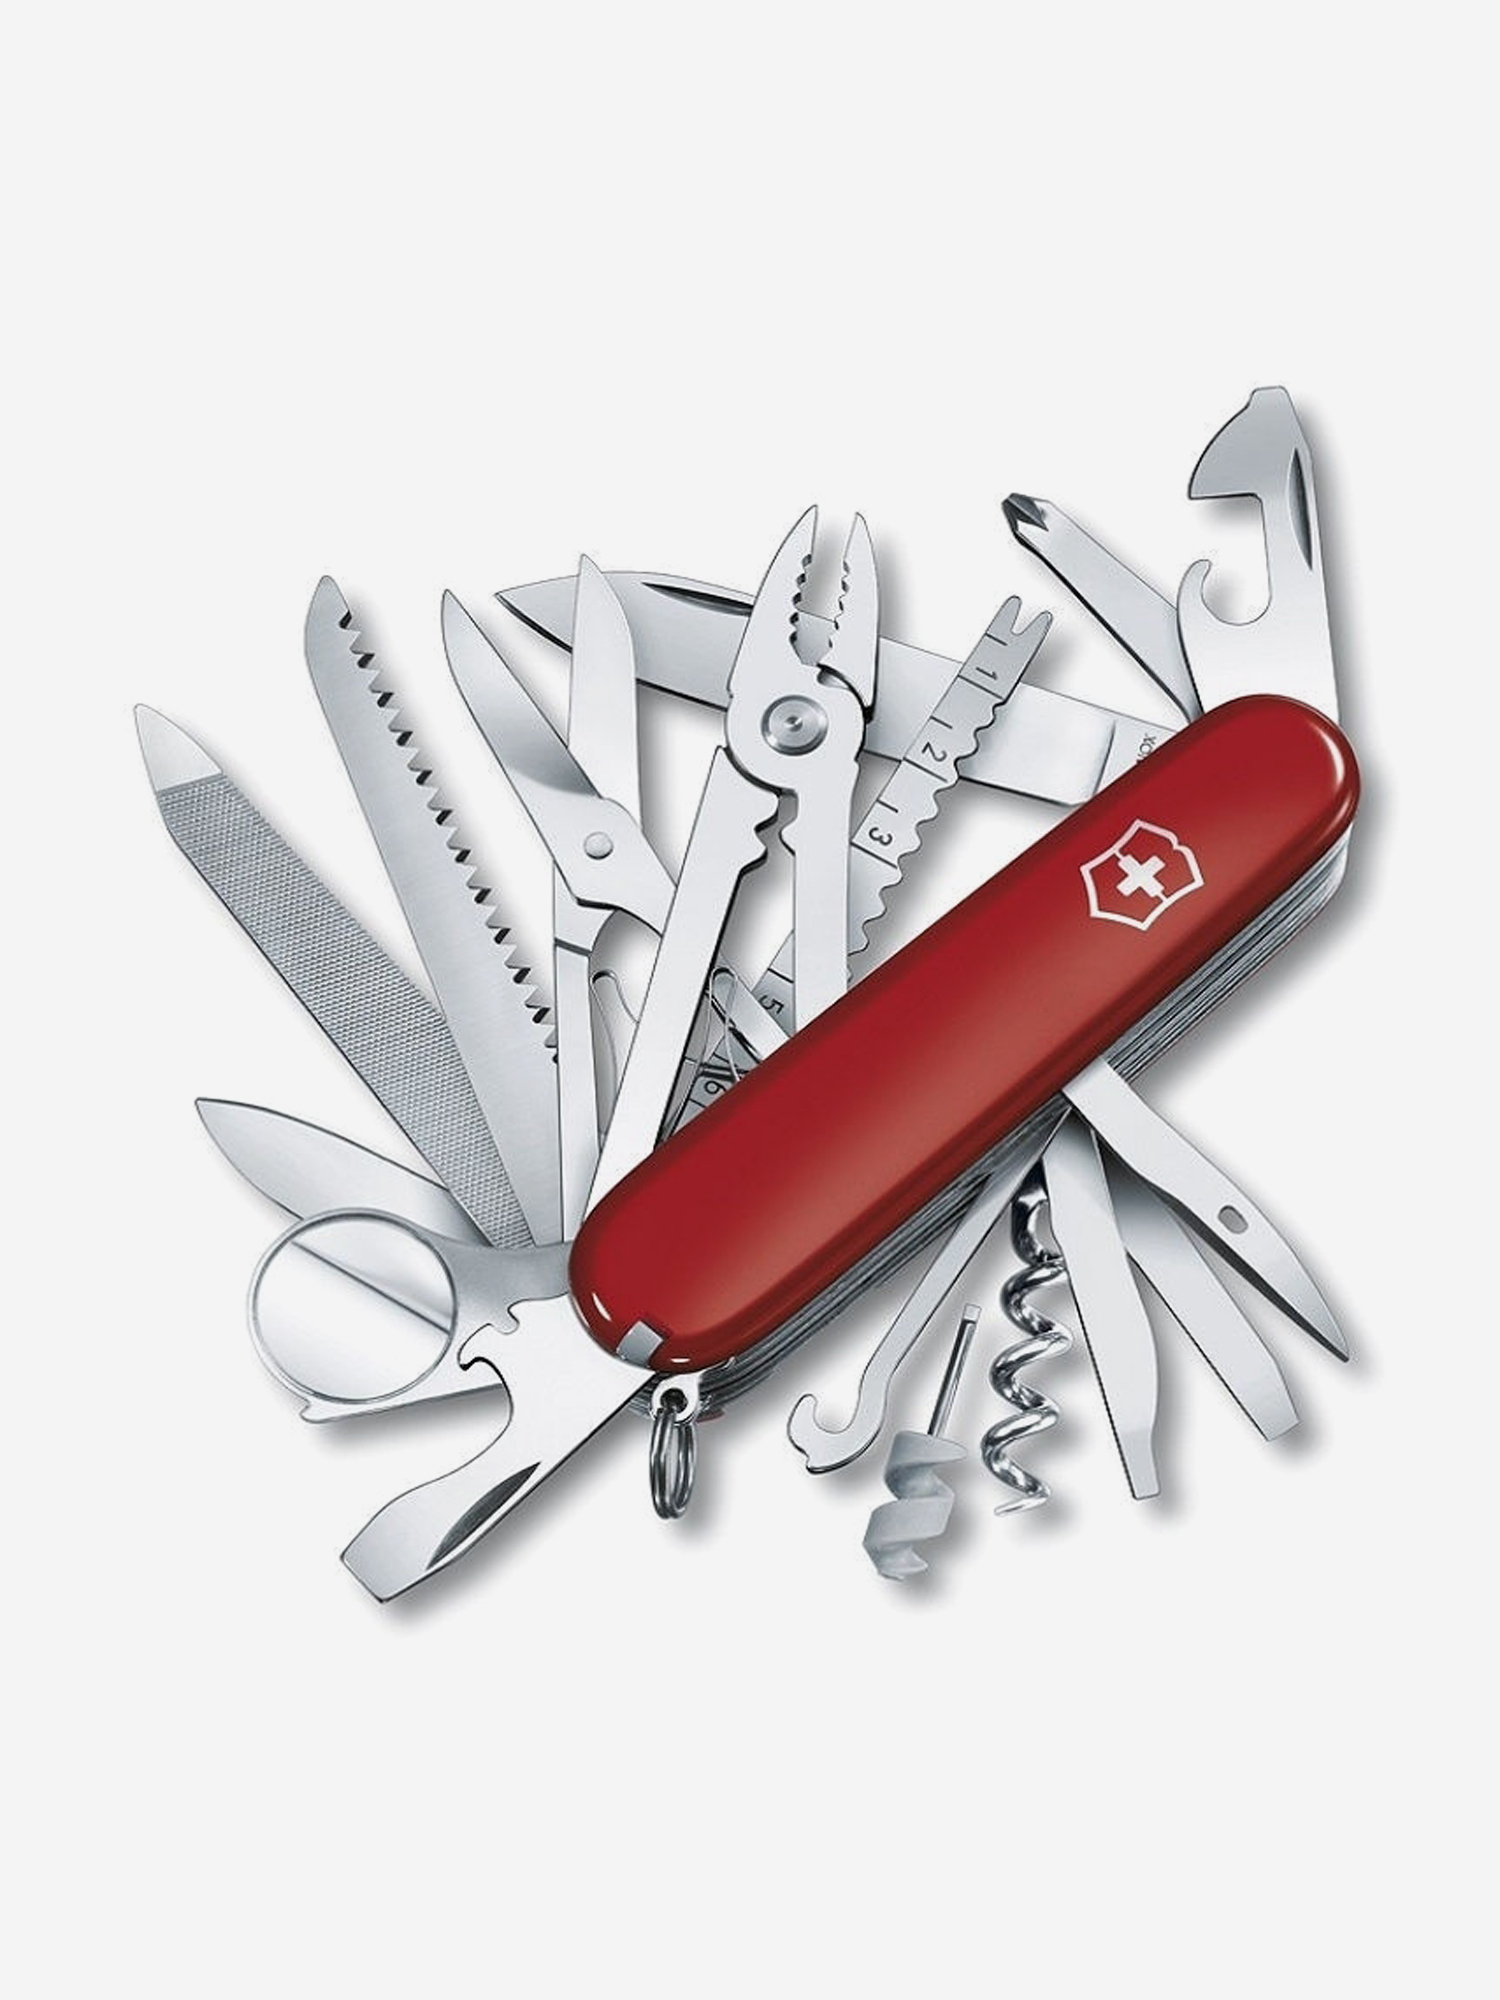 Нож складной Victorinox SwissChamp, 91 мм, 33 функции, Красный нож складной victorinox outrider 111 мм 14 функций красный